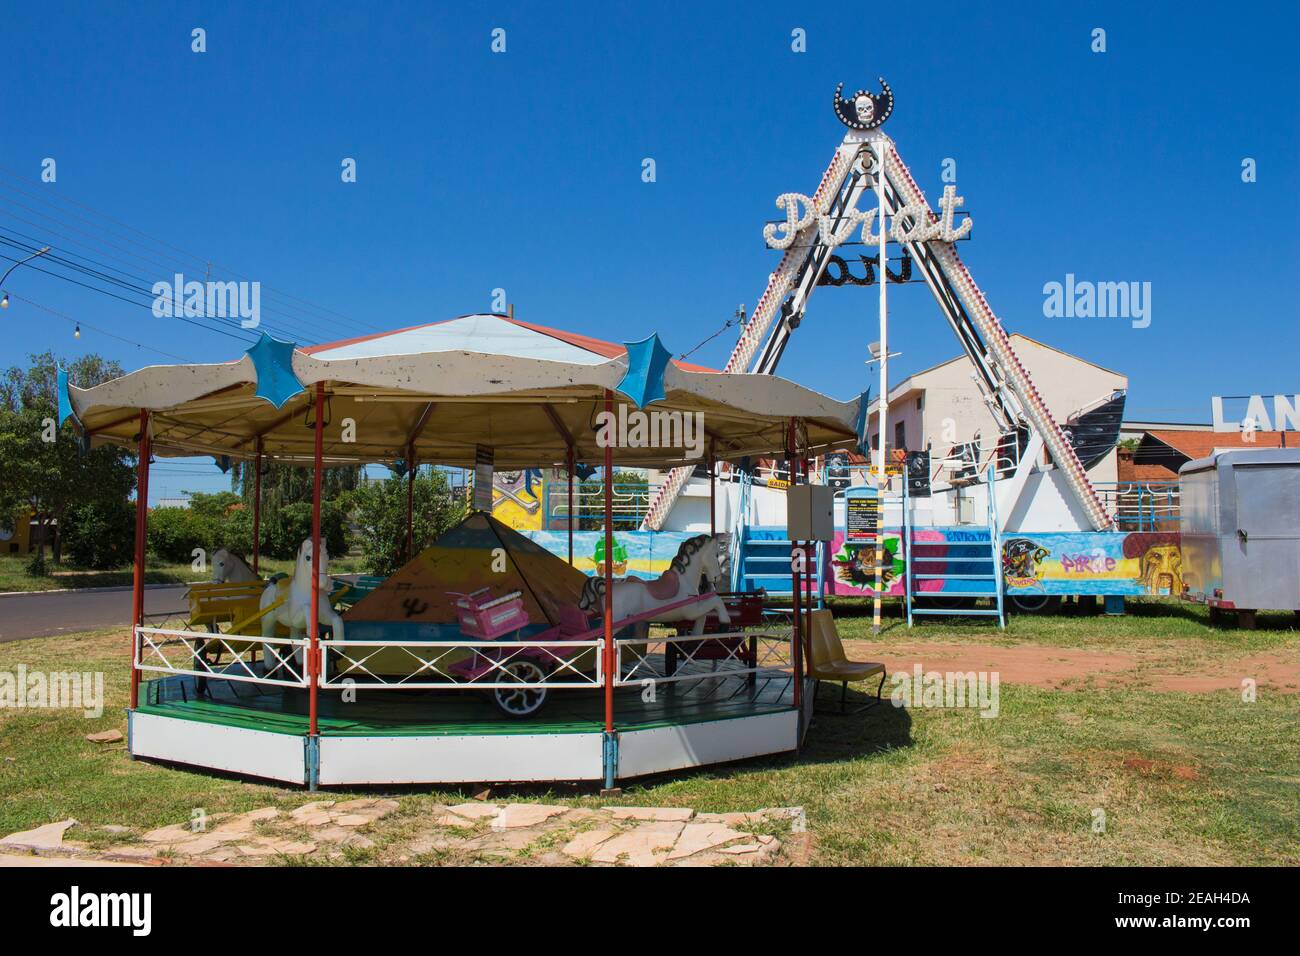 Ibitinga, SP, Brazil - 02 07 2021: Pirate ship and carousel at a amusement park Stock Photo